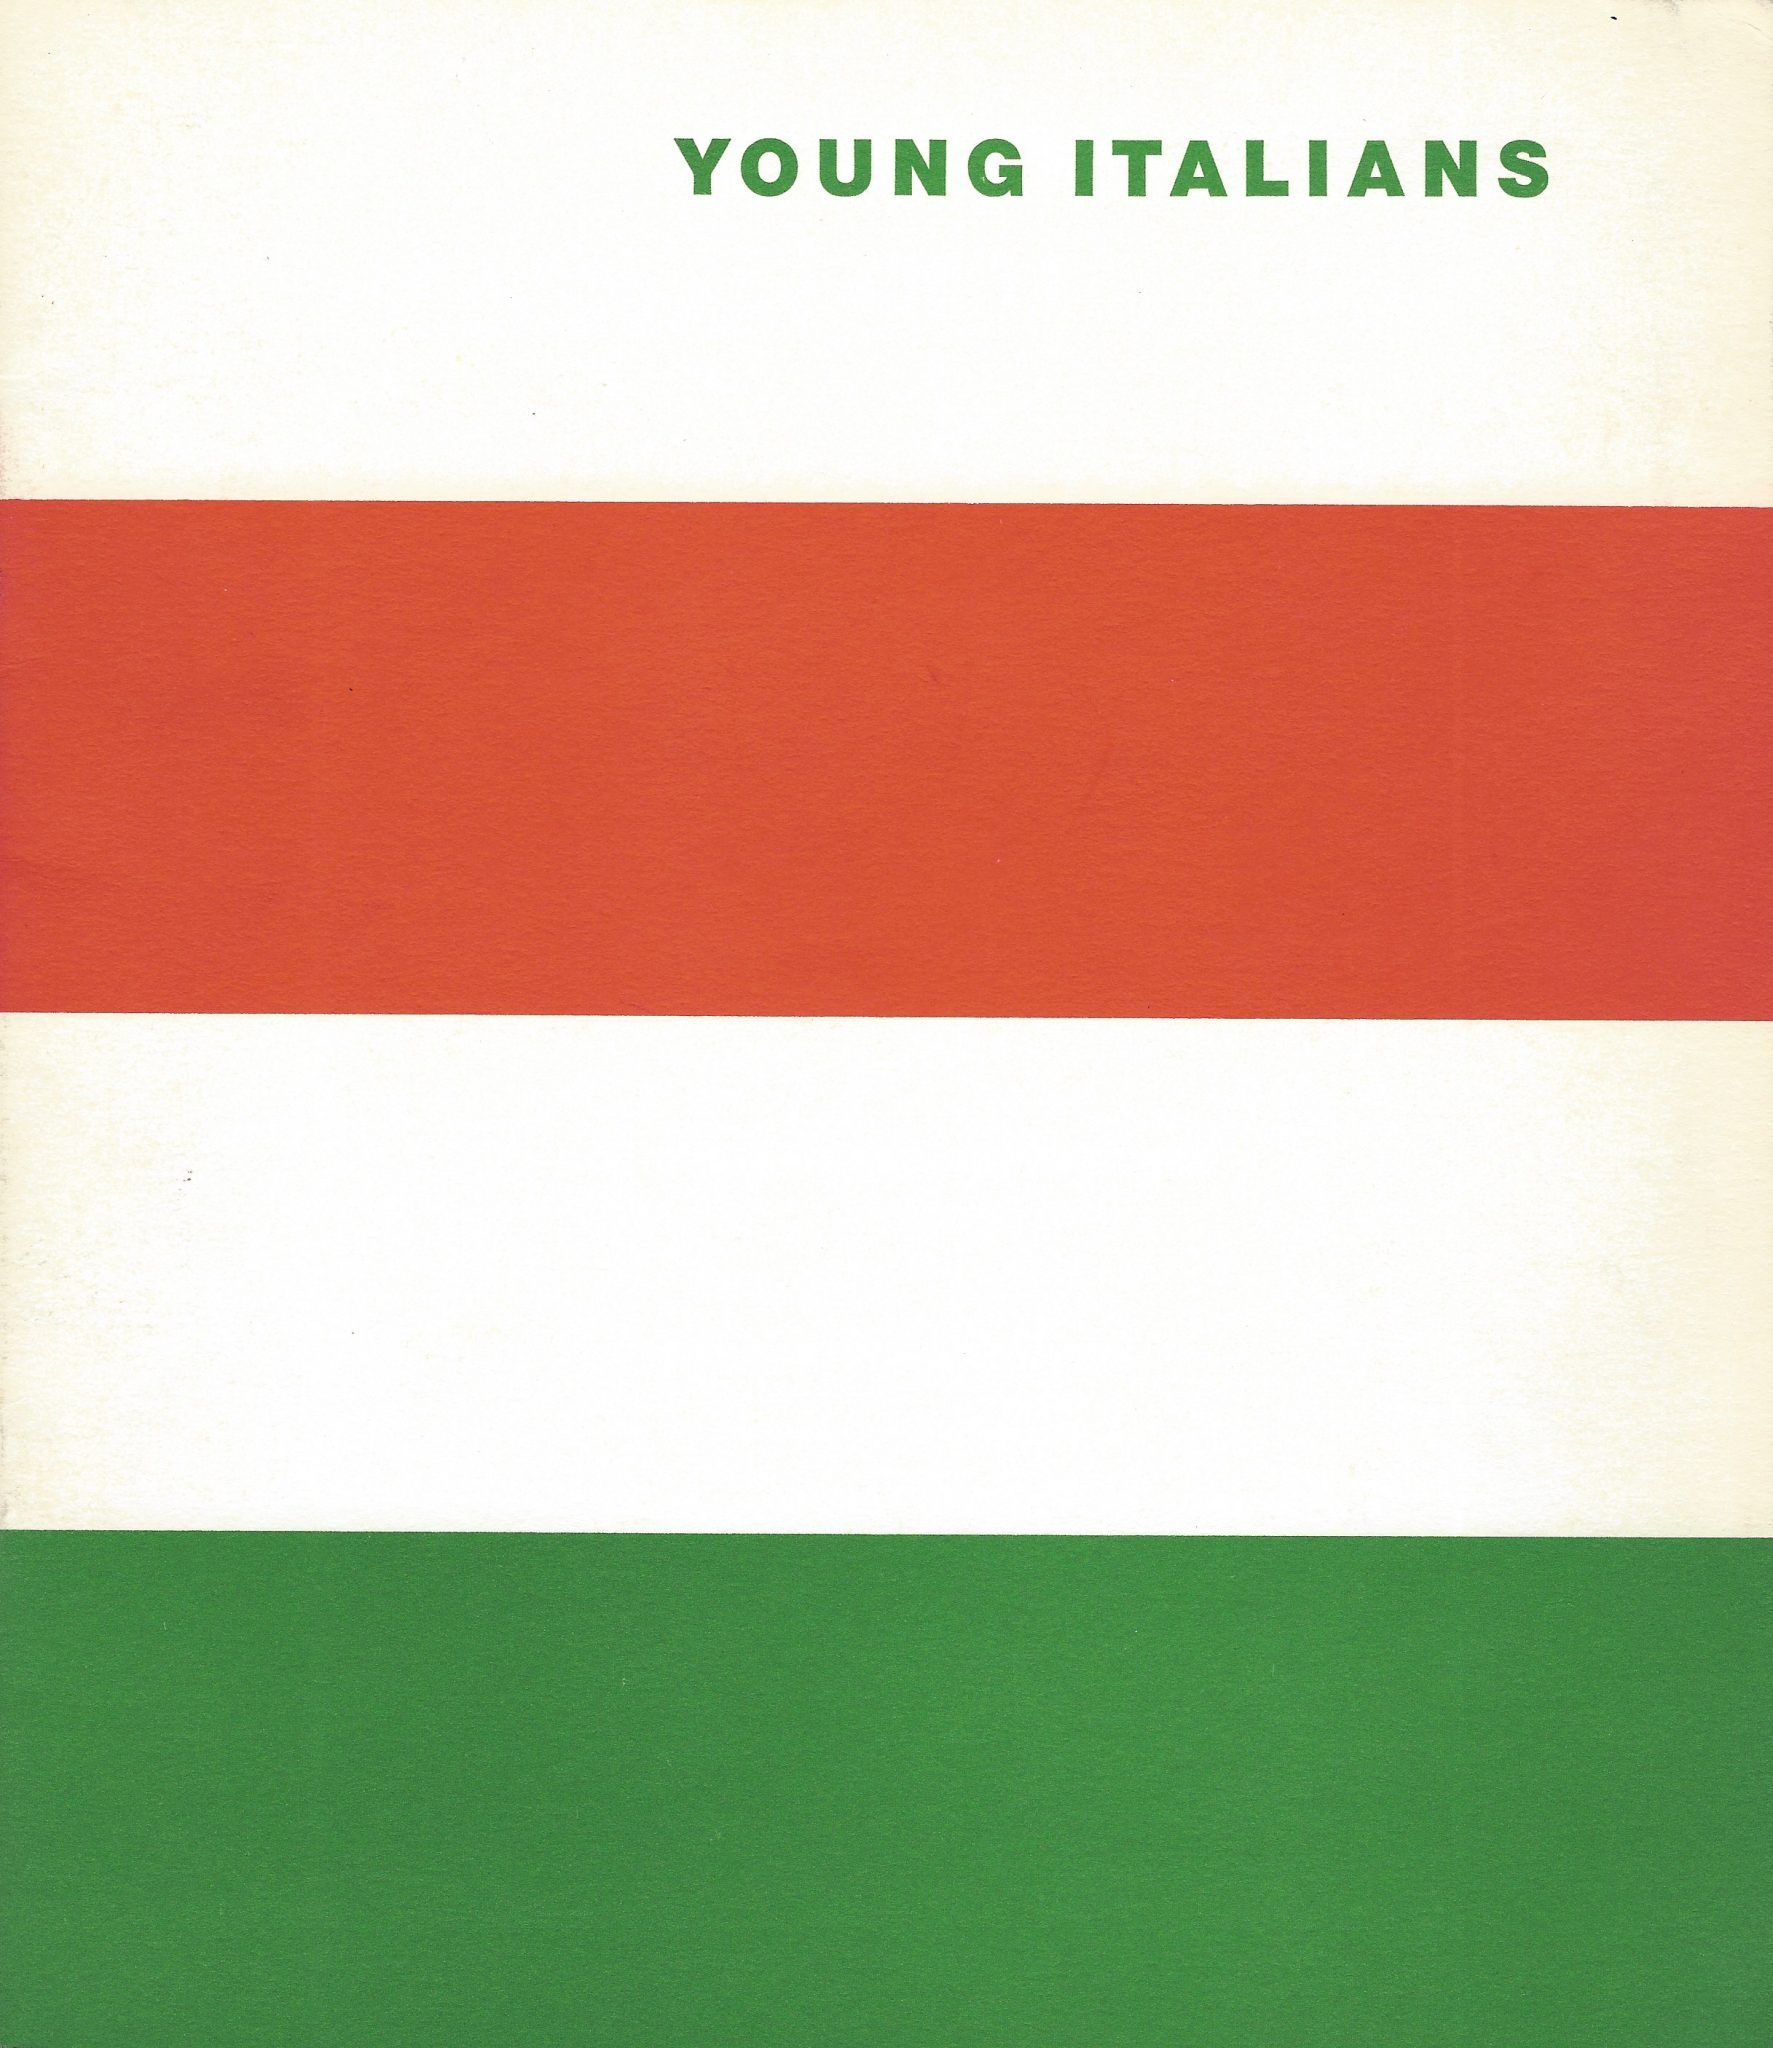 YOUNG ITALIANS: a New York 12 nomi della nuova generazione dell’Arte Italiana. IMMAGINI